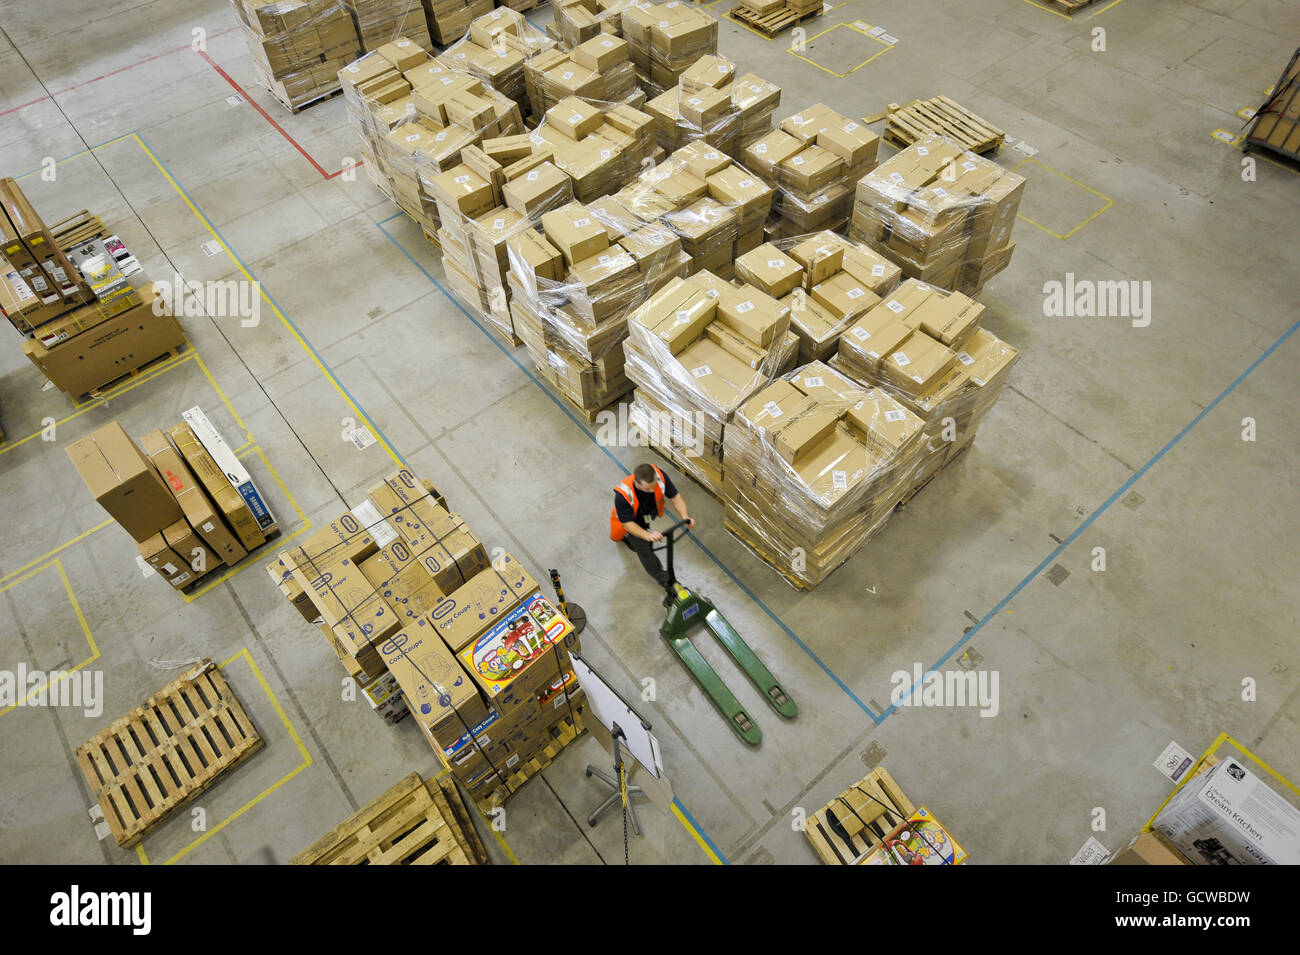 Un employé d'Amazon pousse un palettiseur parmi les boîtes du centre de distribution d'Amazon, Swansea, pays de Galles. Banque D'Images